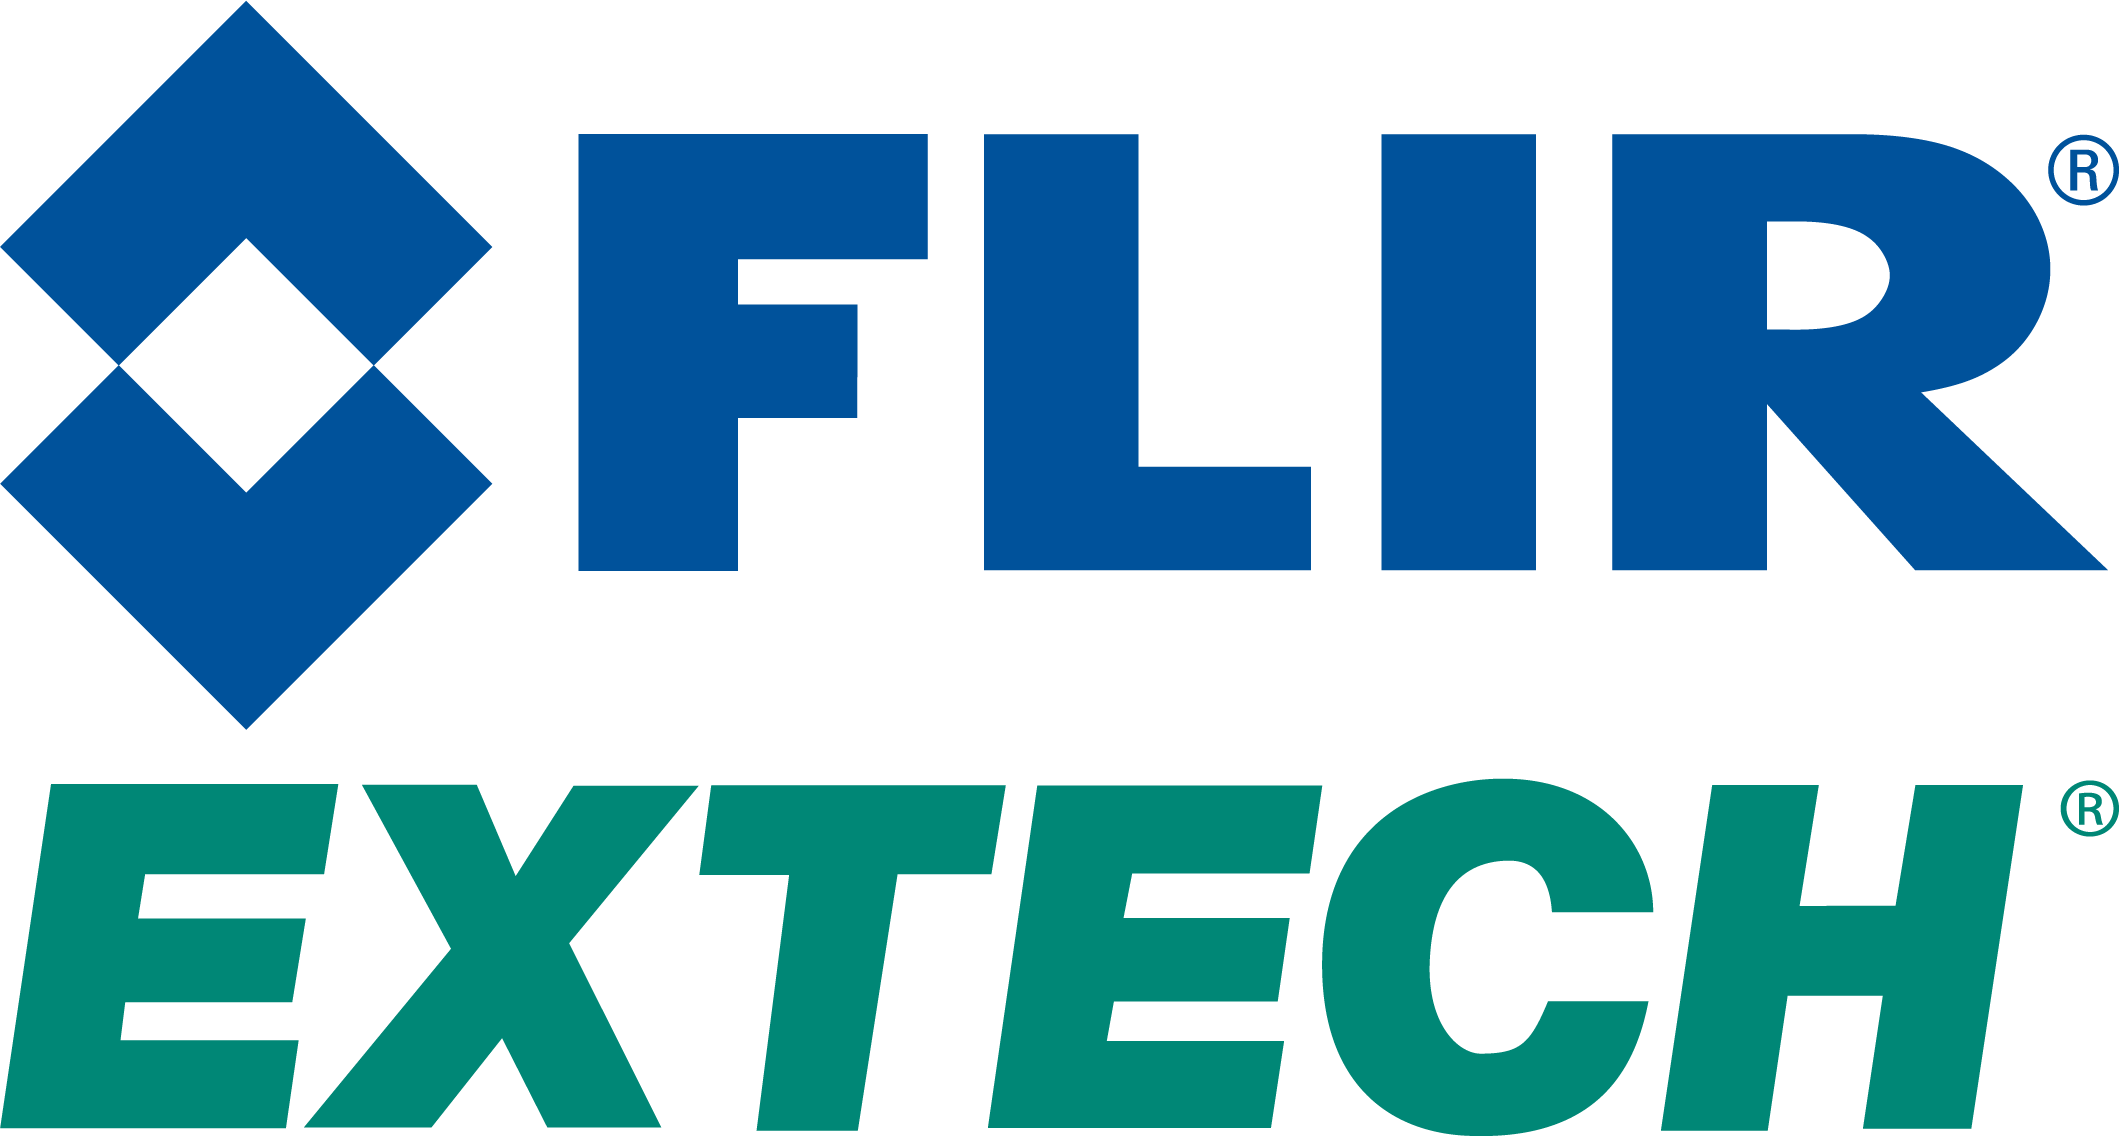 FLIR Extech